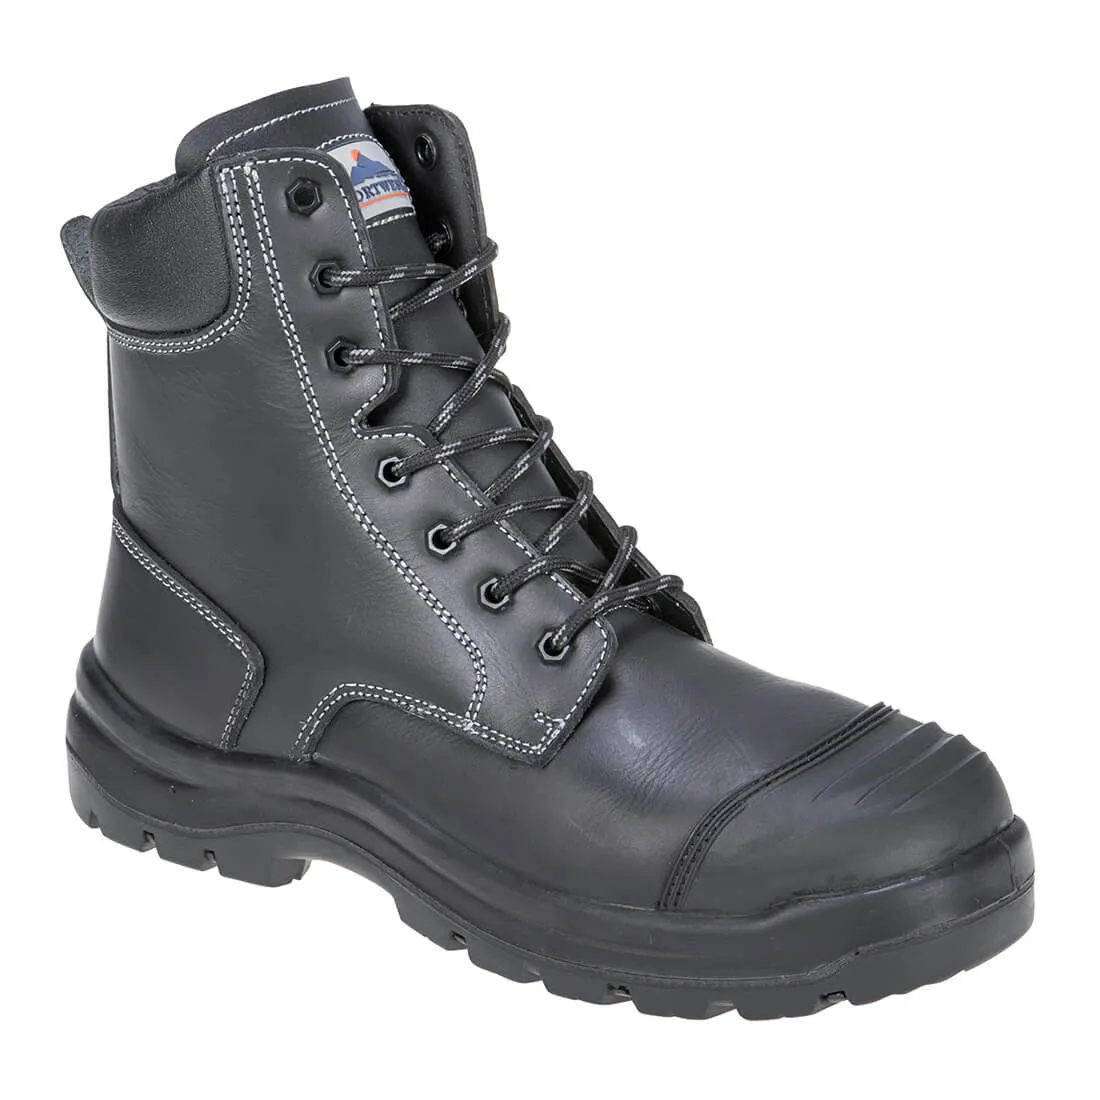 Portwest Pro Mens Eden S3 Safety Boots - Black, Size 6.5